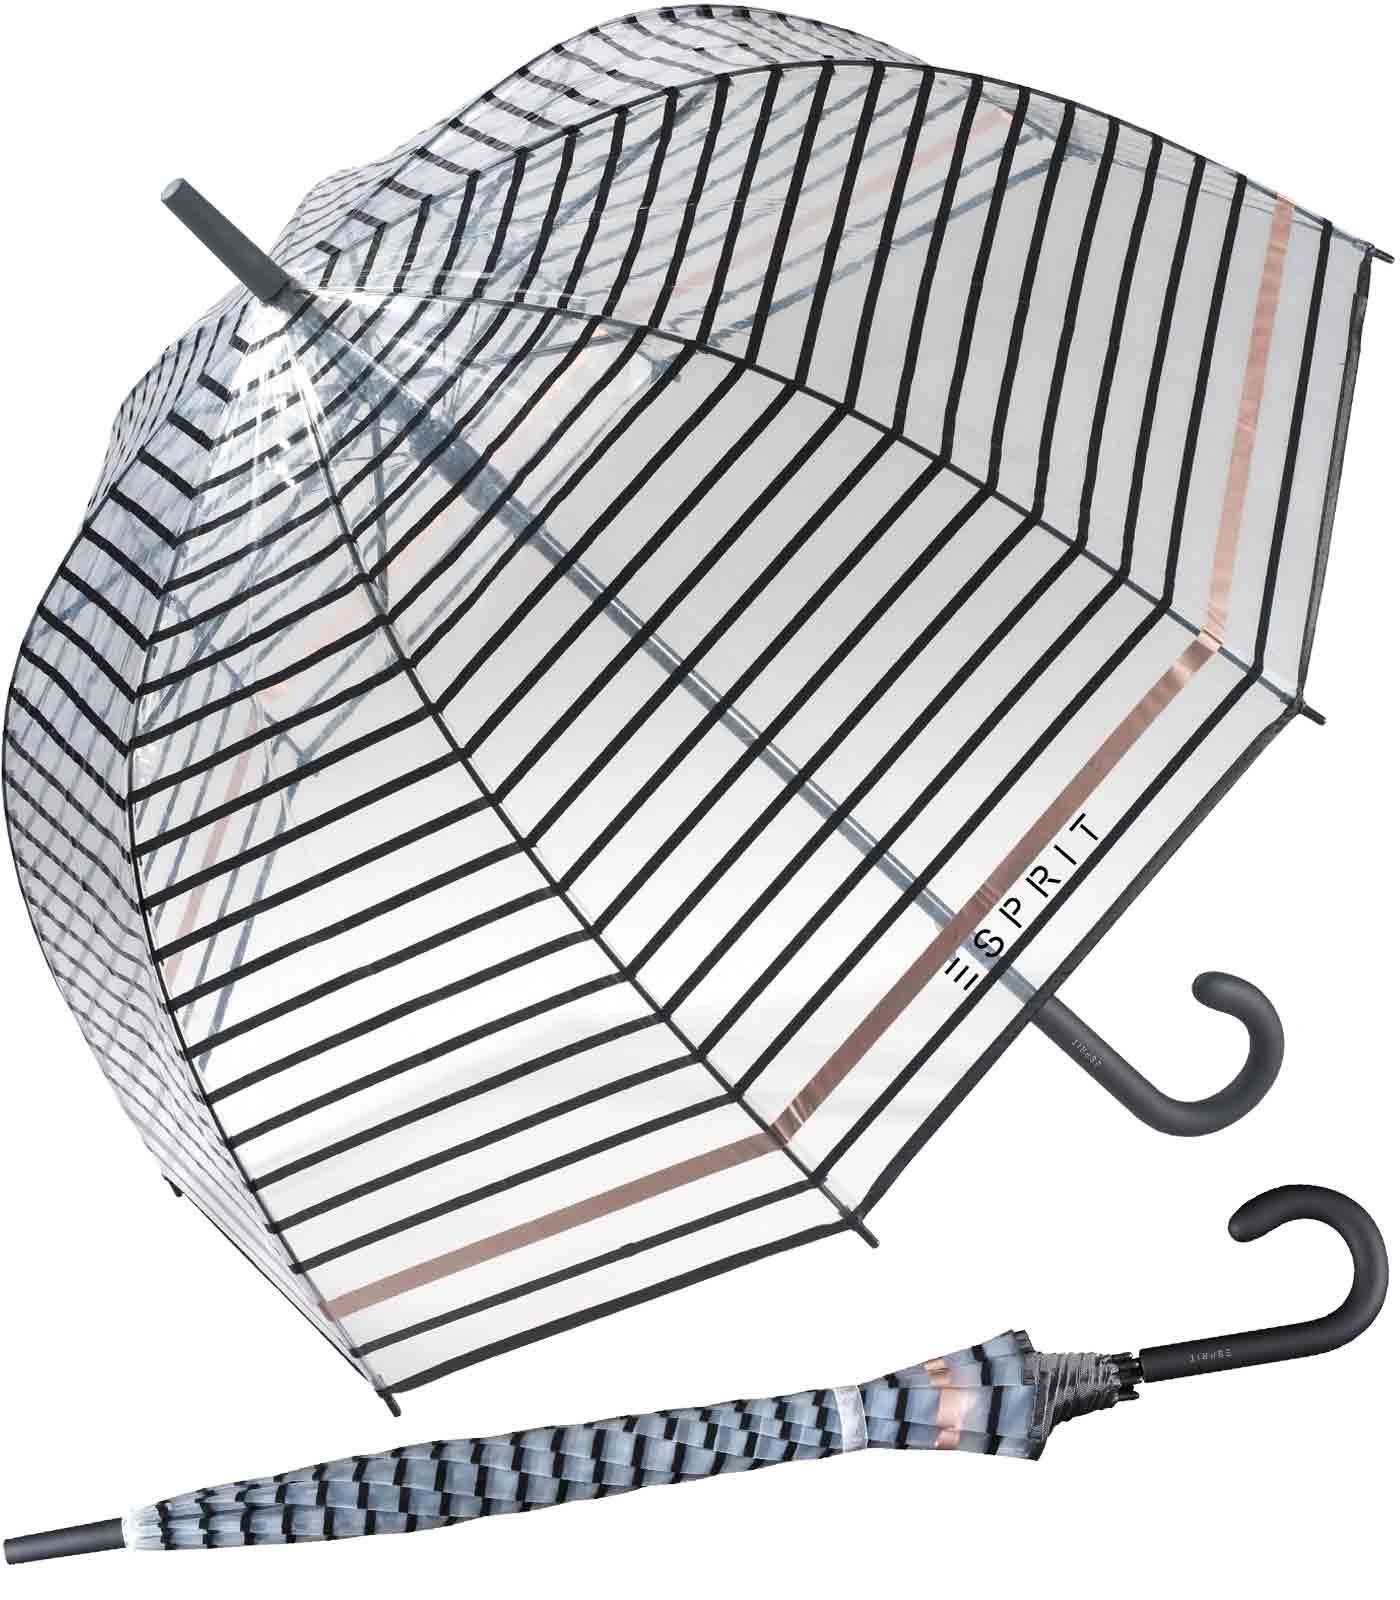 Esprit Langregenschirm Glockenschirm mit Automatik transparent, durchsichtig